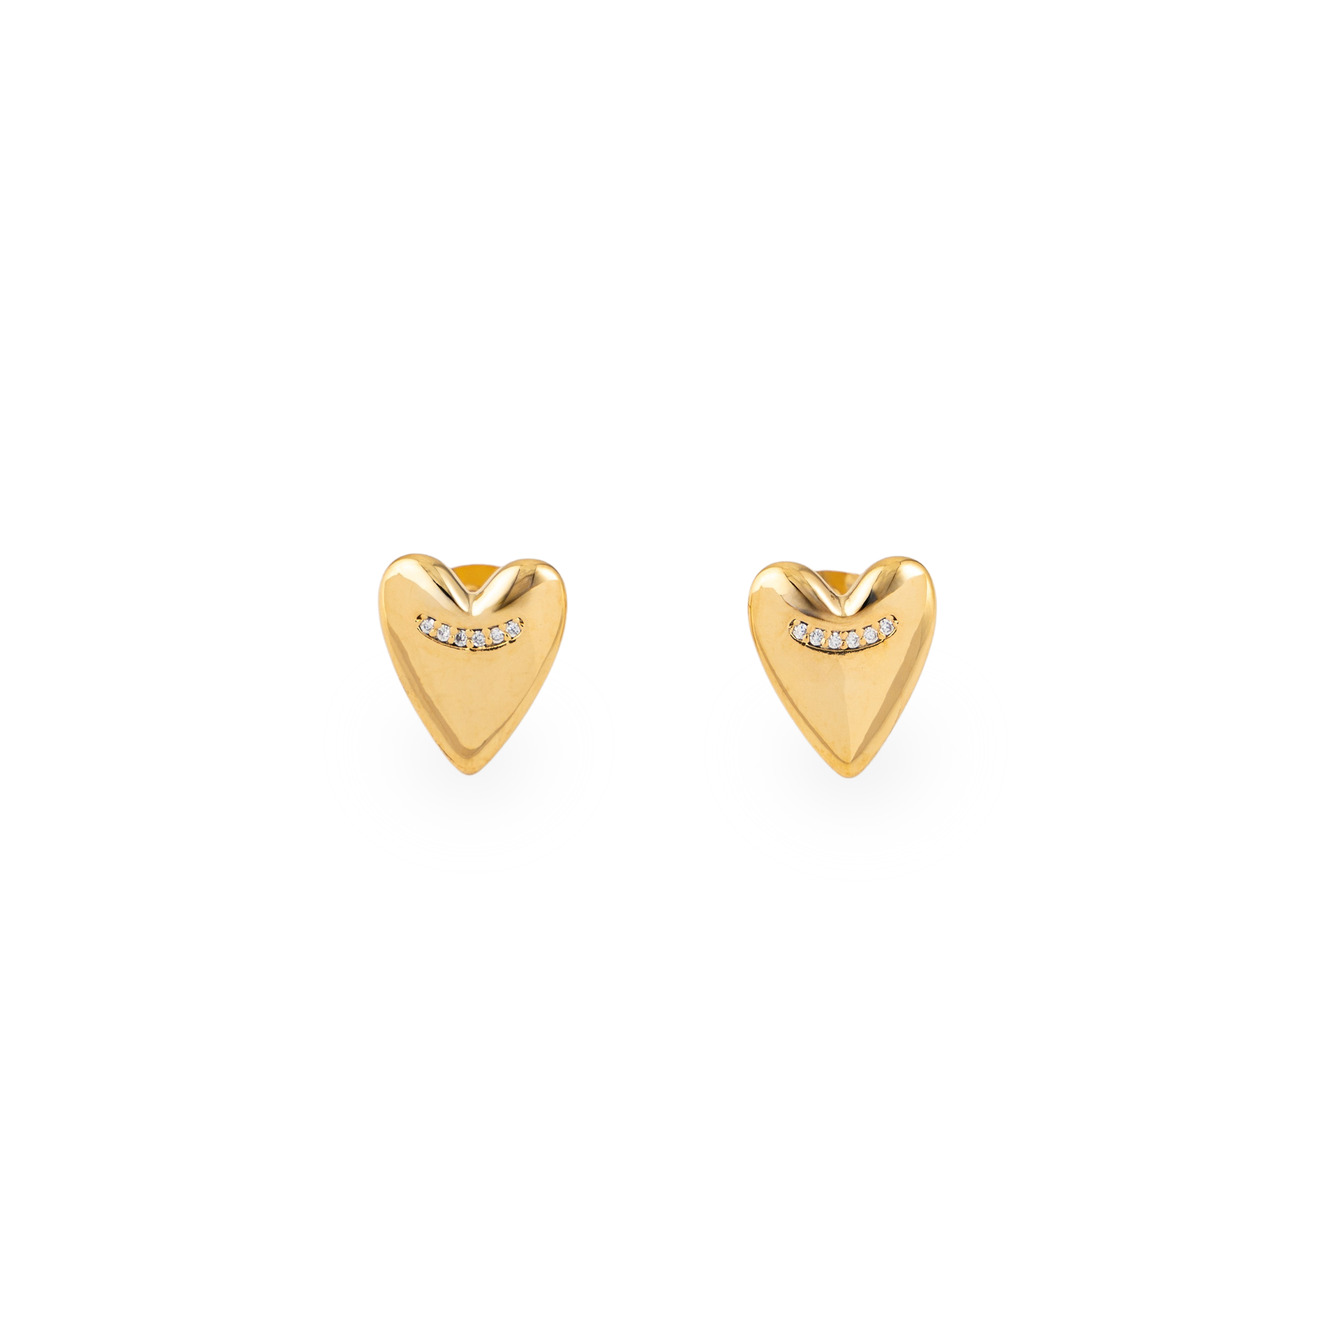 lisa smith золотистые двойные серьги сердца Free Form Jewelry Золотистые серьги-сердца с маленькими кристаллами